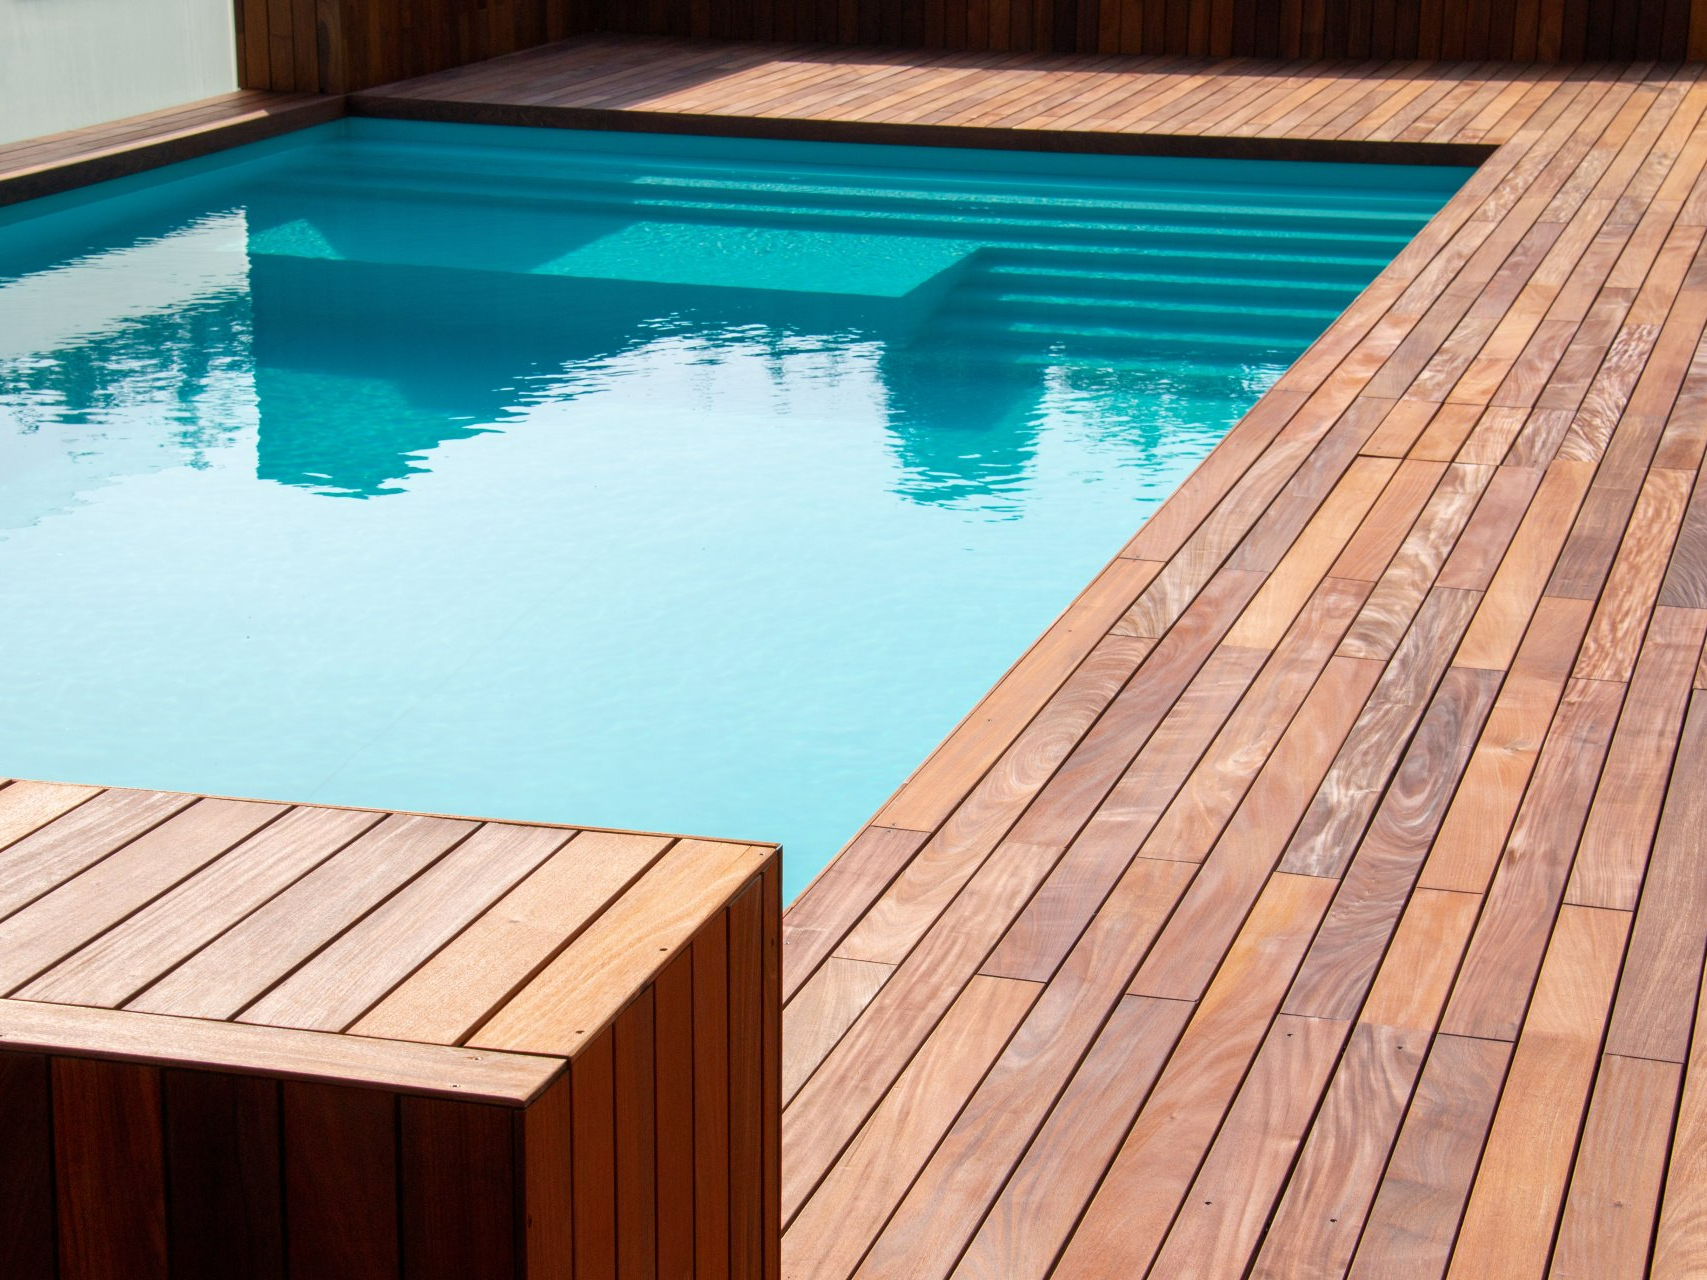 Terrasse de piscine en bois exotique